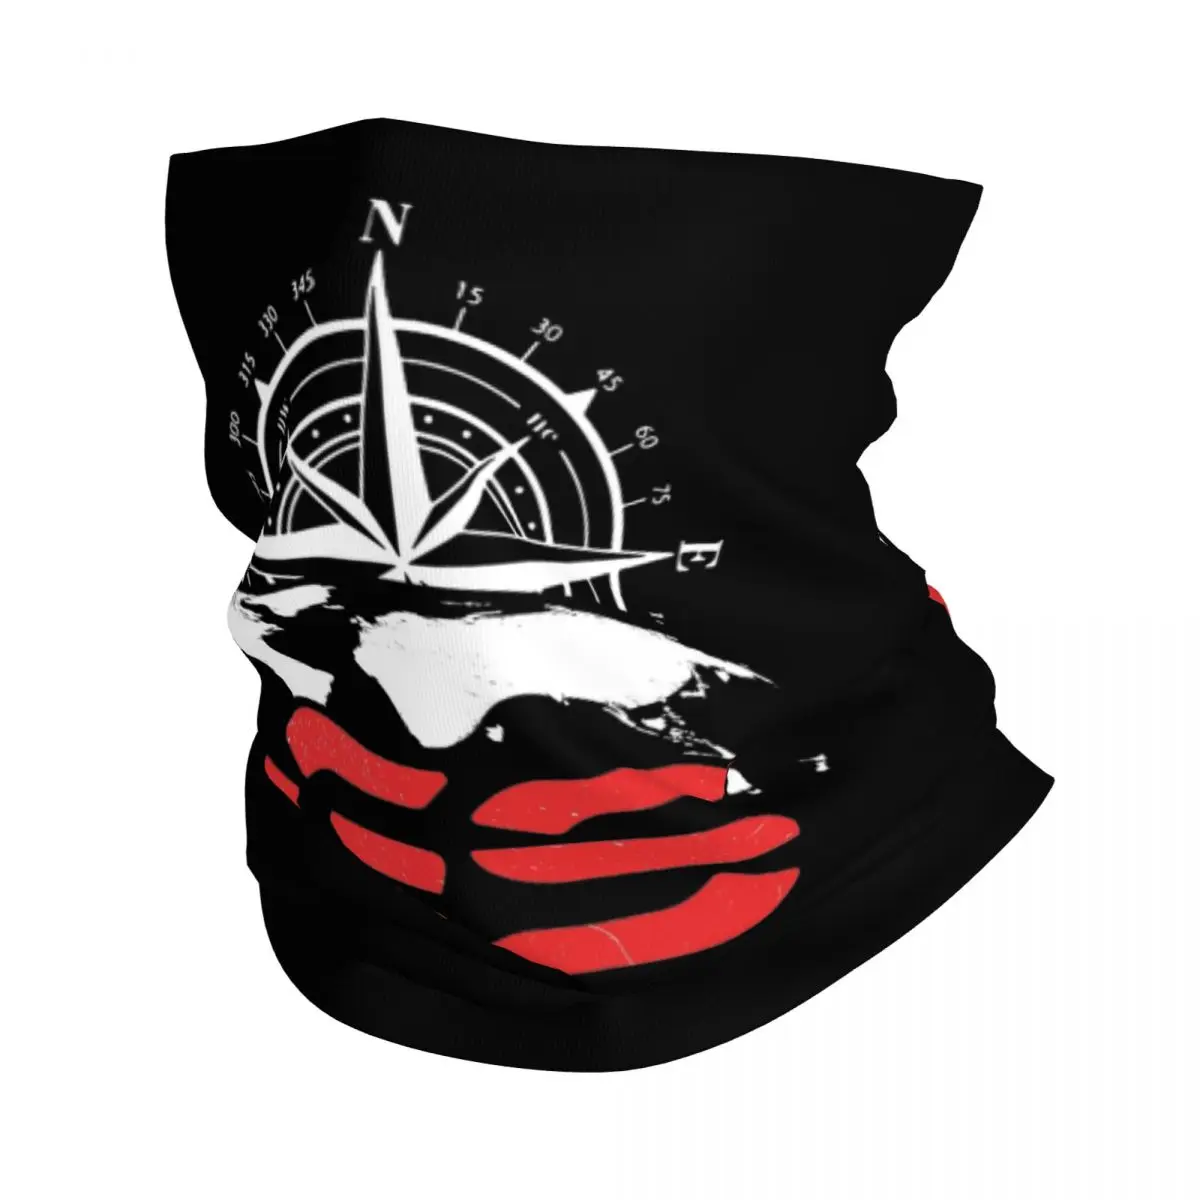 

Бандана Enduro Dventure, накидка на шею с принтом GS Moto, волшебный шарф, многофункциональная маска для лица для спорта на открытом воздухе, унисекс, для взрослых, для зимы